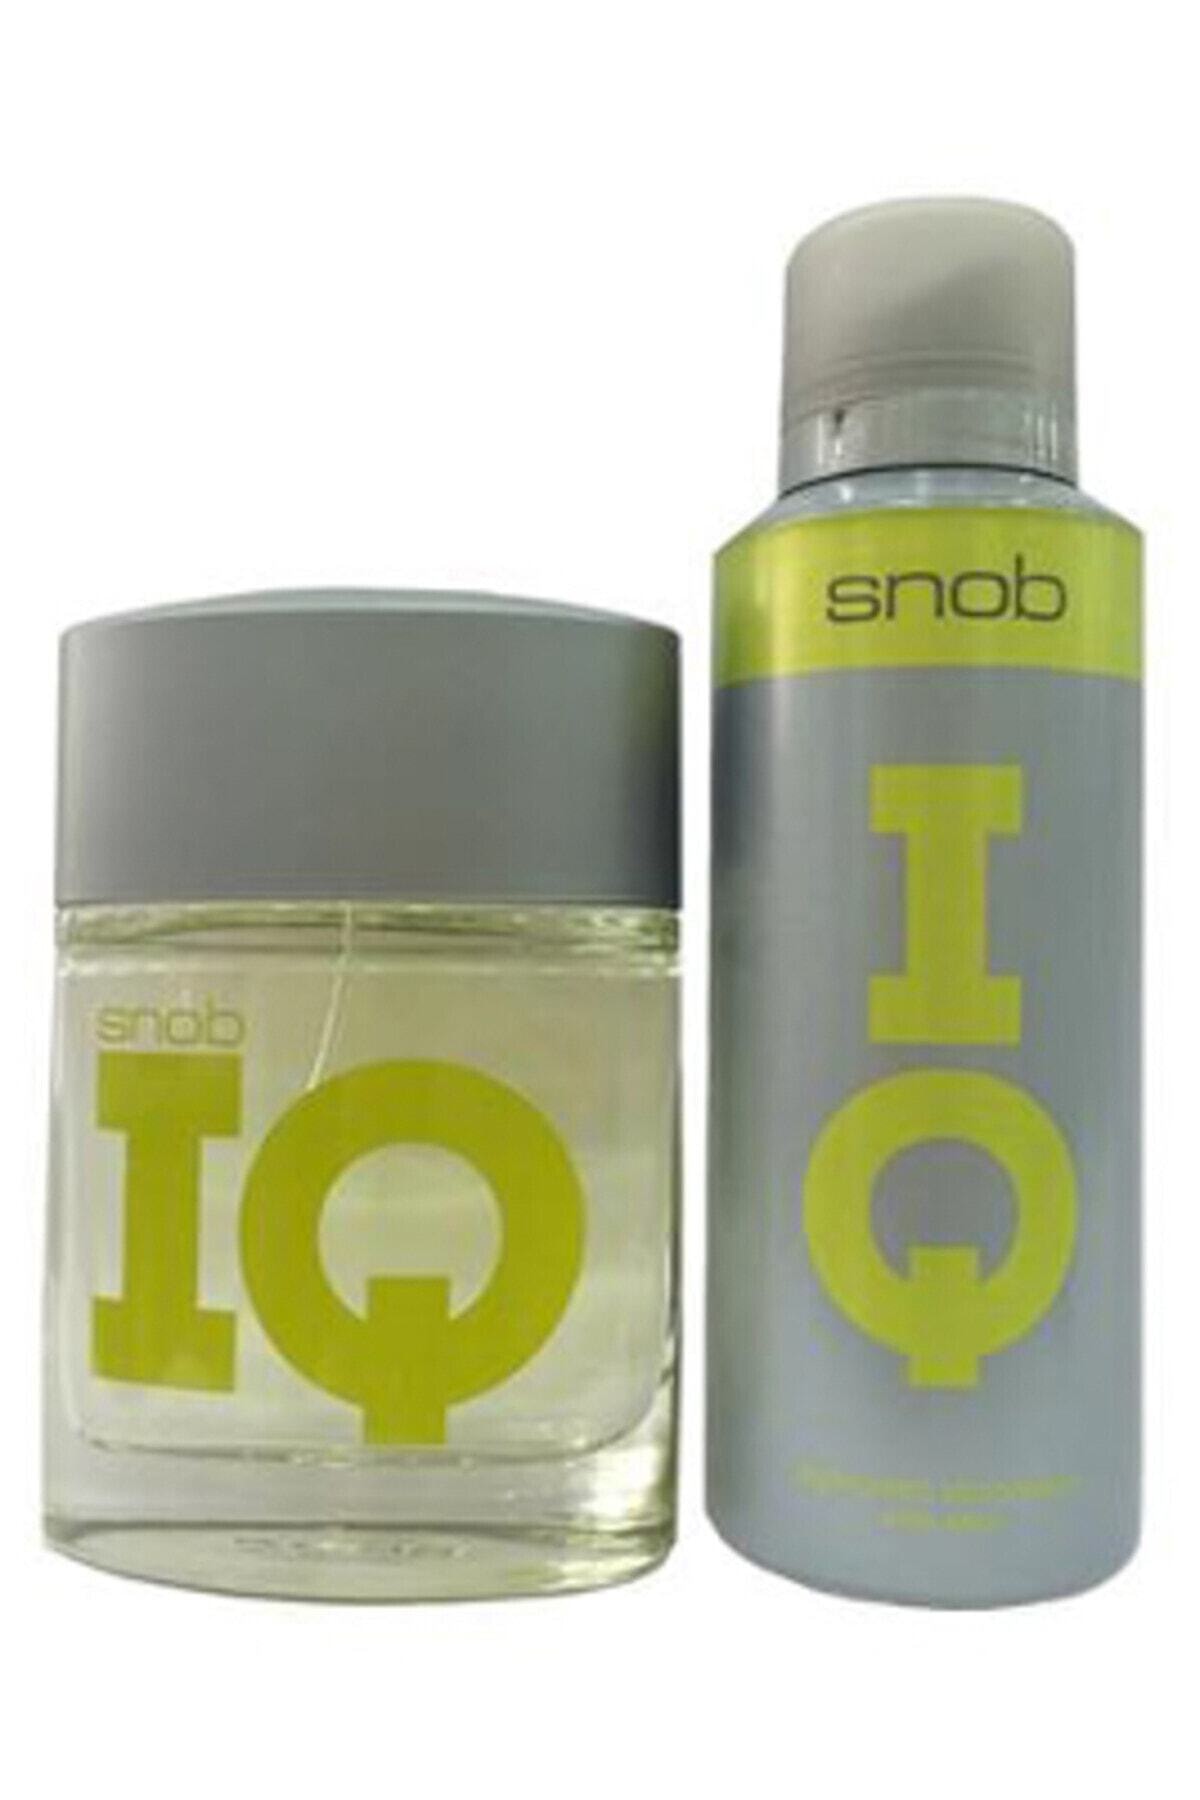 çekici Trafik sıkışıklığı vadi  Snob IQ Edt 100 ml + 150 ml Deodorant Erkek Parfüm Seti 8690644012235  Fiyatı, Yorumları - TRENDYOL